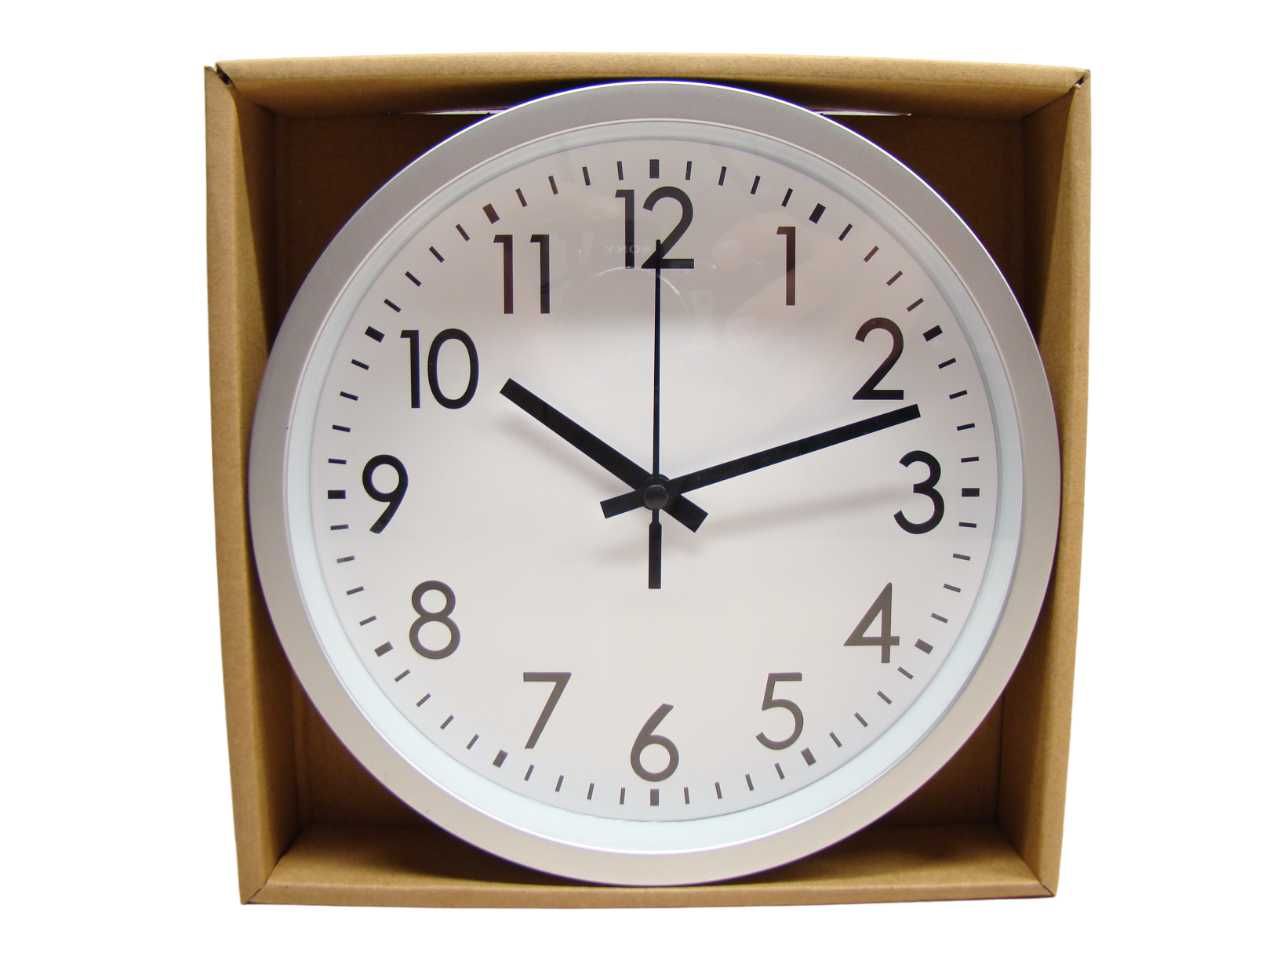 TIKTAK ścienny zegar na ścianę srebrnobiały wall clock gratis bateria